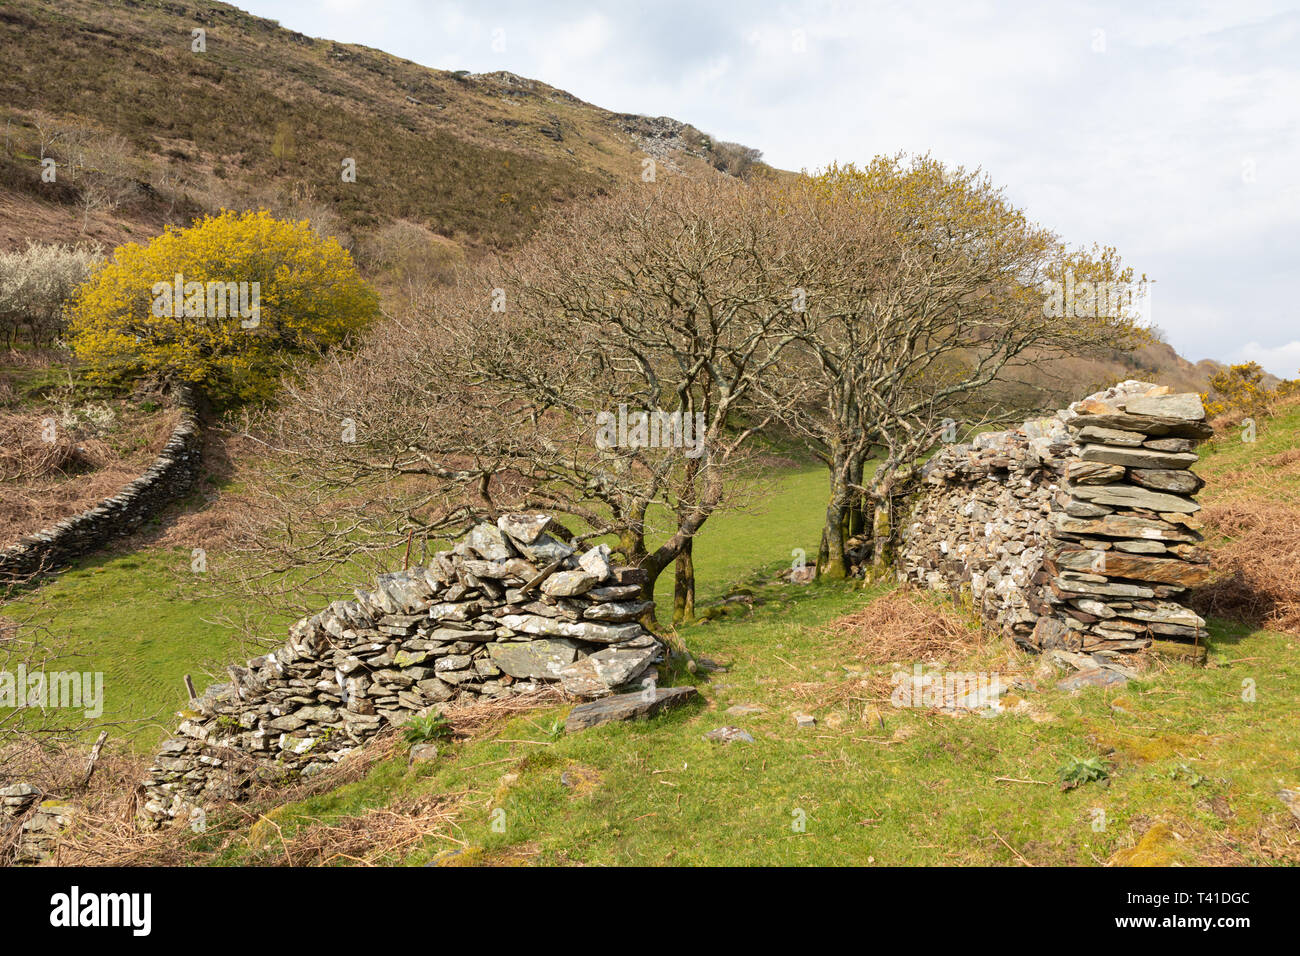 Sul pendio di una collina in Galles, sopra Barmouth, due muri in pietra a secco il fianco di un piccolo gruppo di nodose alberi i cui rami sono mostrando boccioli di primavera. Foto Stock